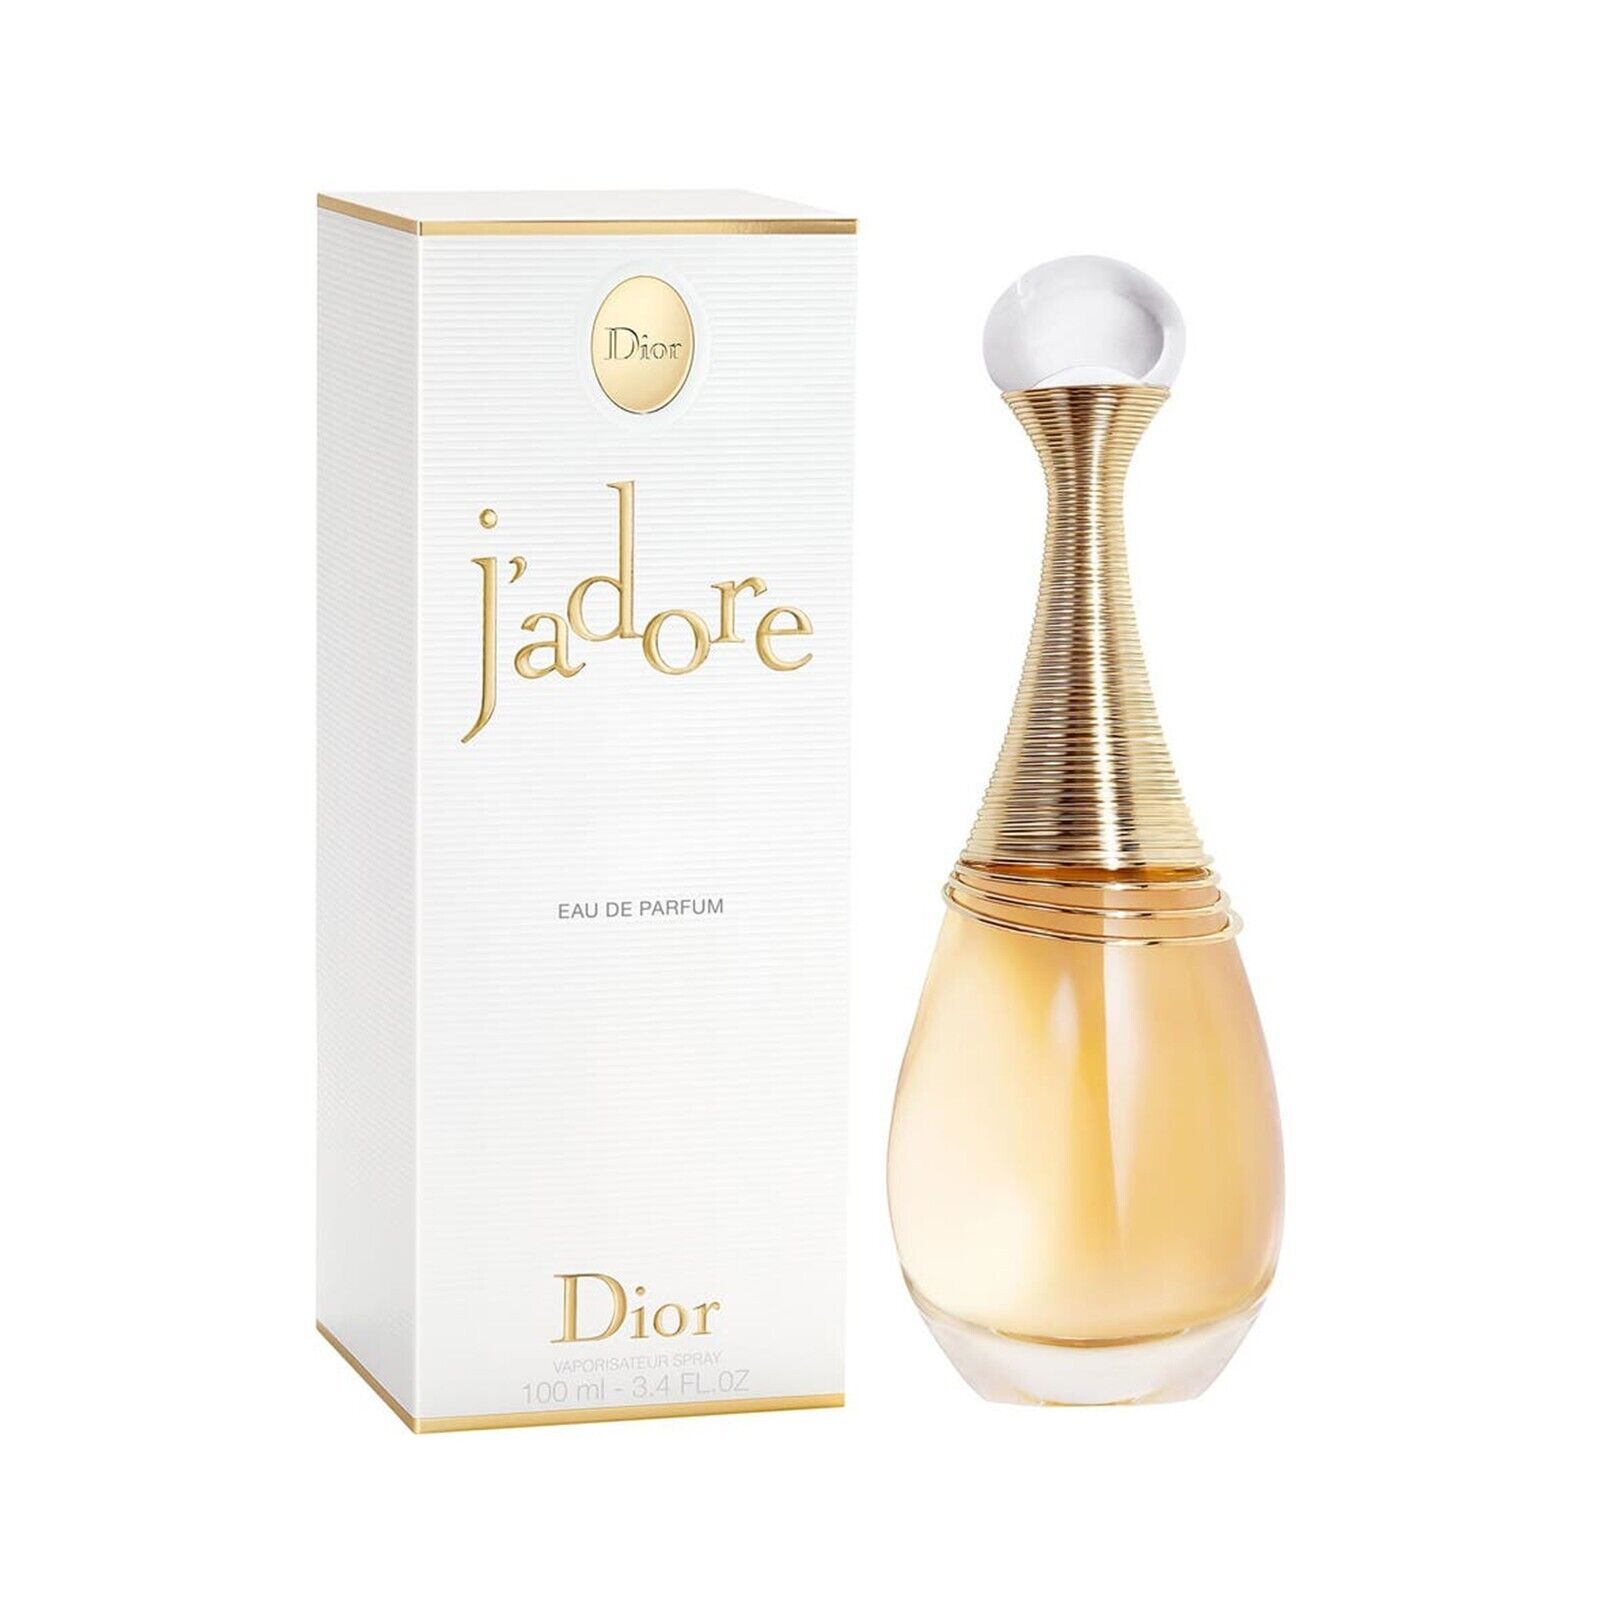 J'adore Perfume for Women Spray 3.4 oz Eau de Parfum EDP Version New and Sealed